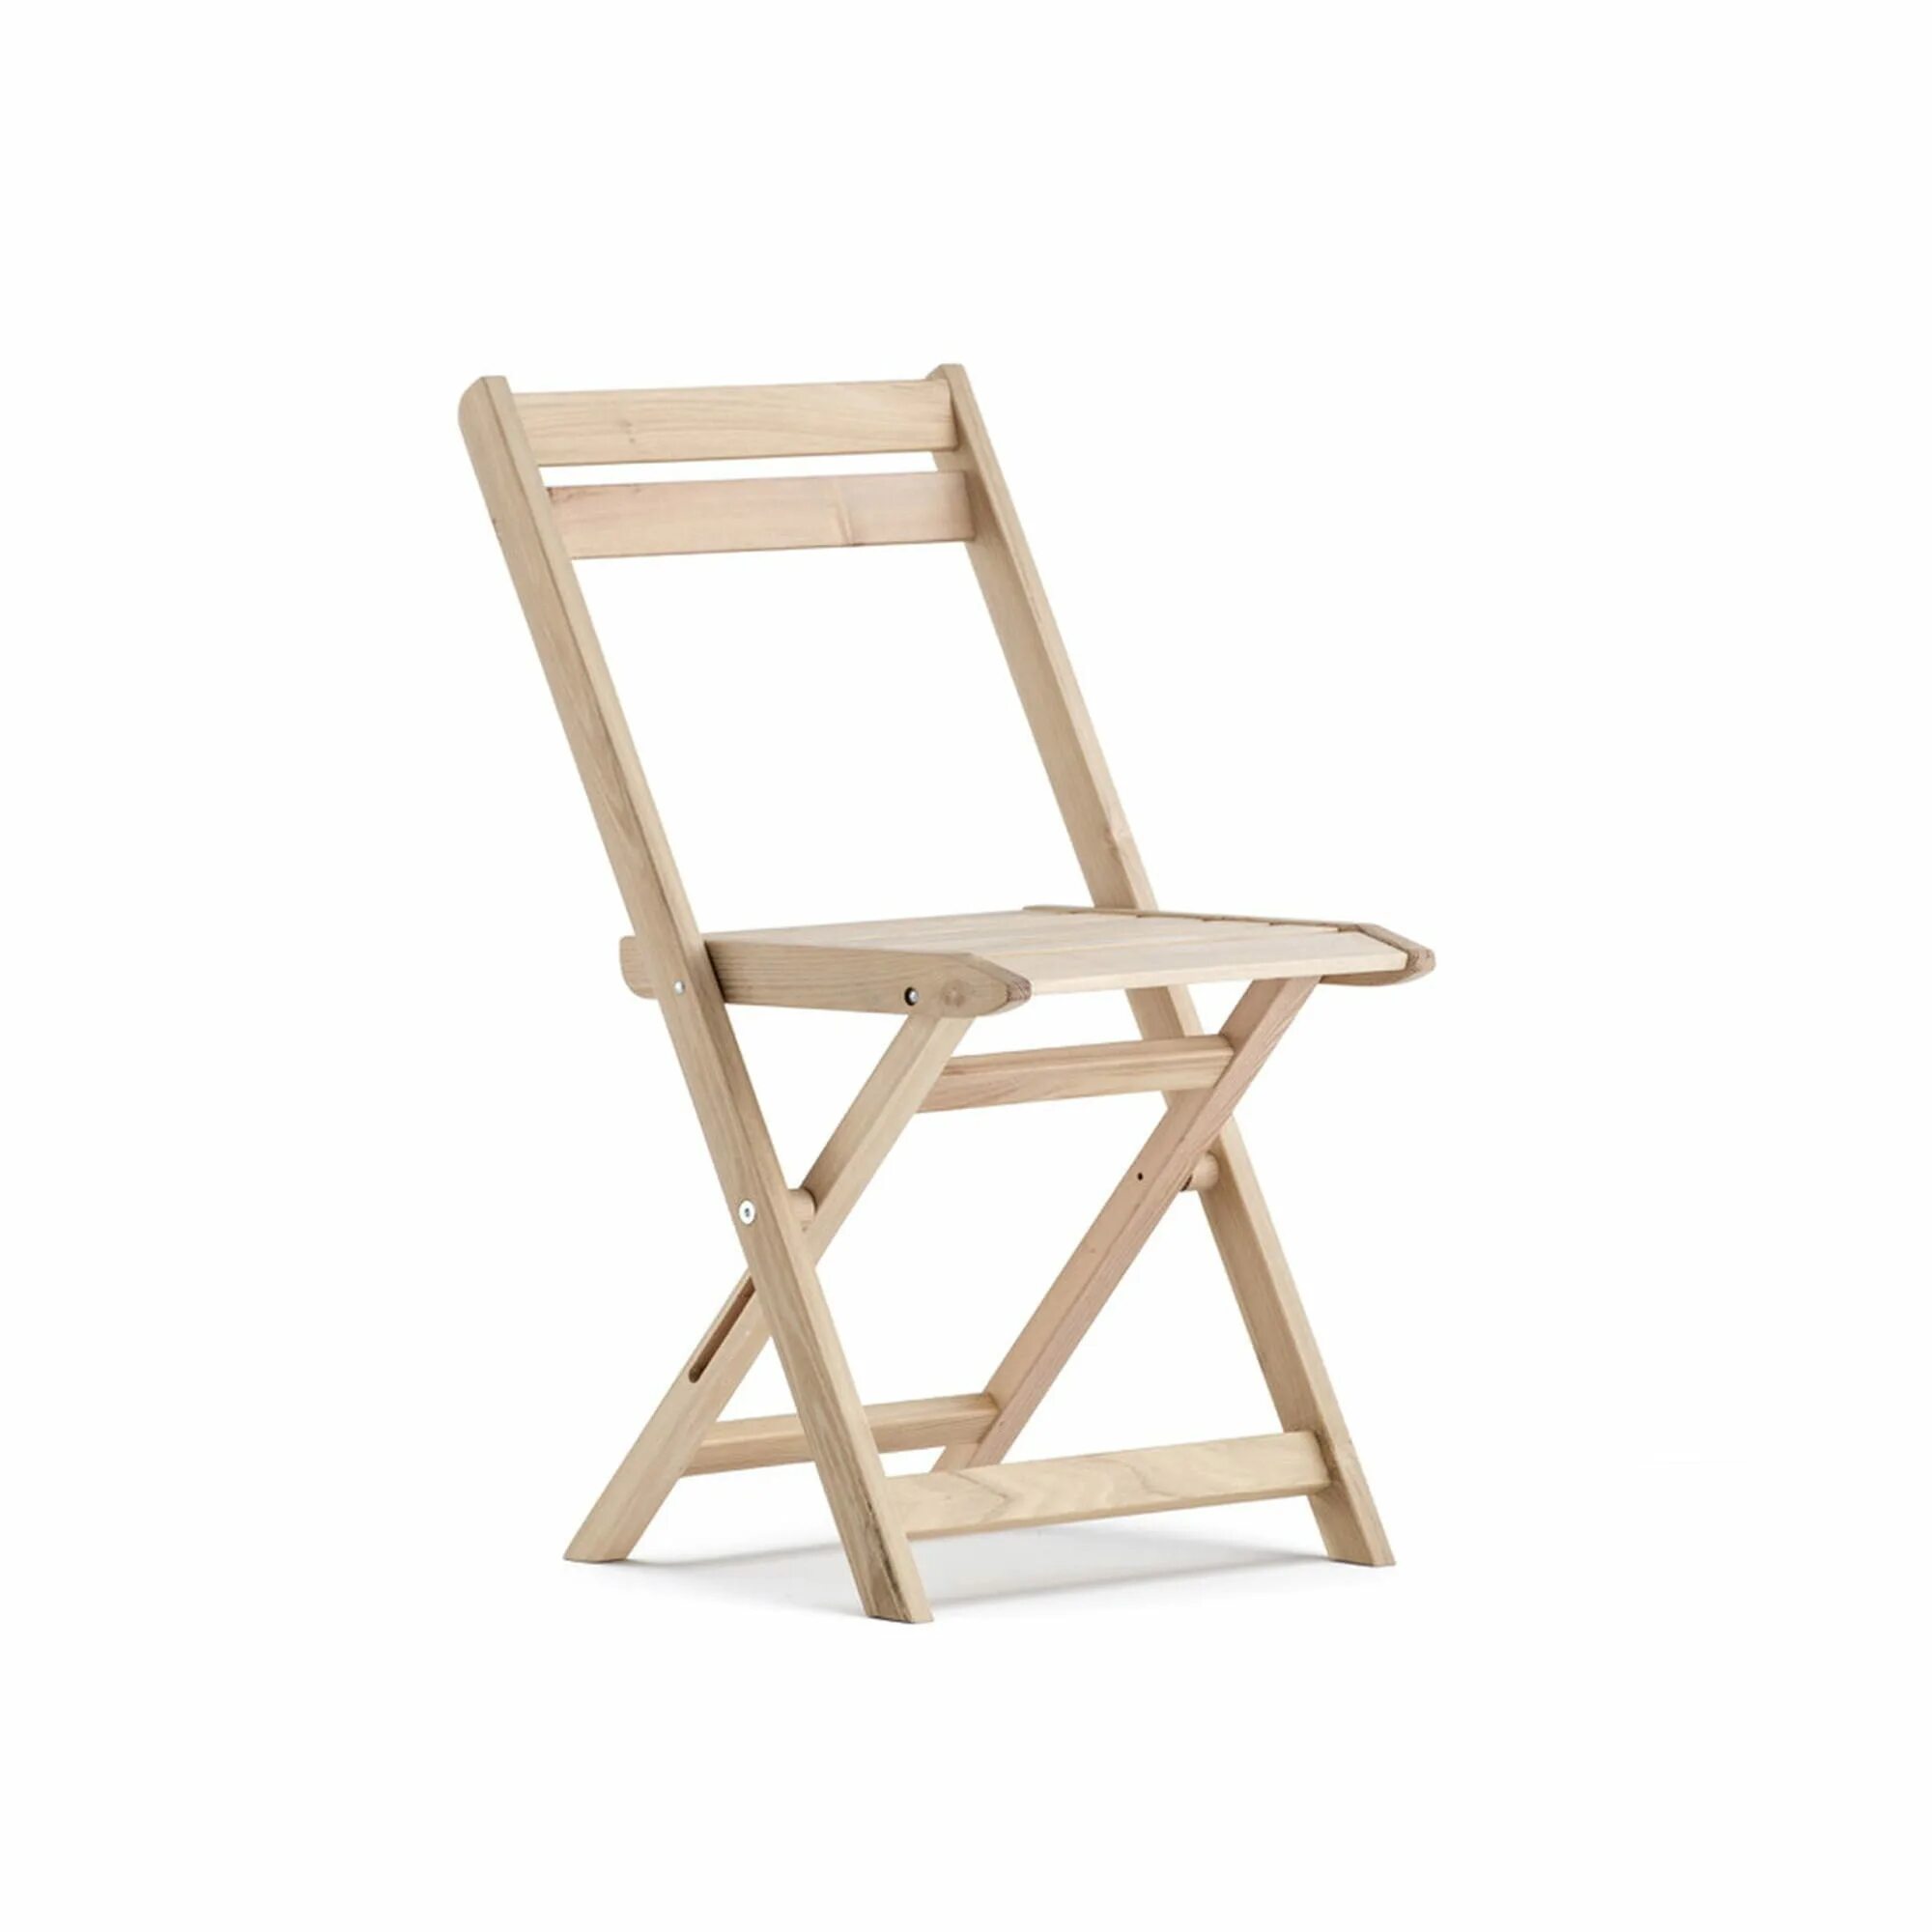 Стул складной деревянный. Раскладной стул со спинкой из дерева. Складной стул дерево. Складной стул со спинкой из дерева. Леруа складные стулья